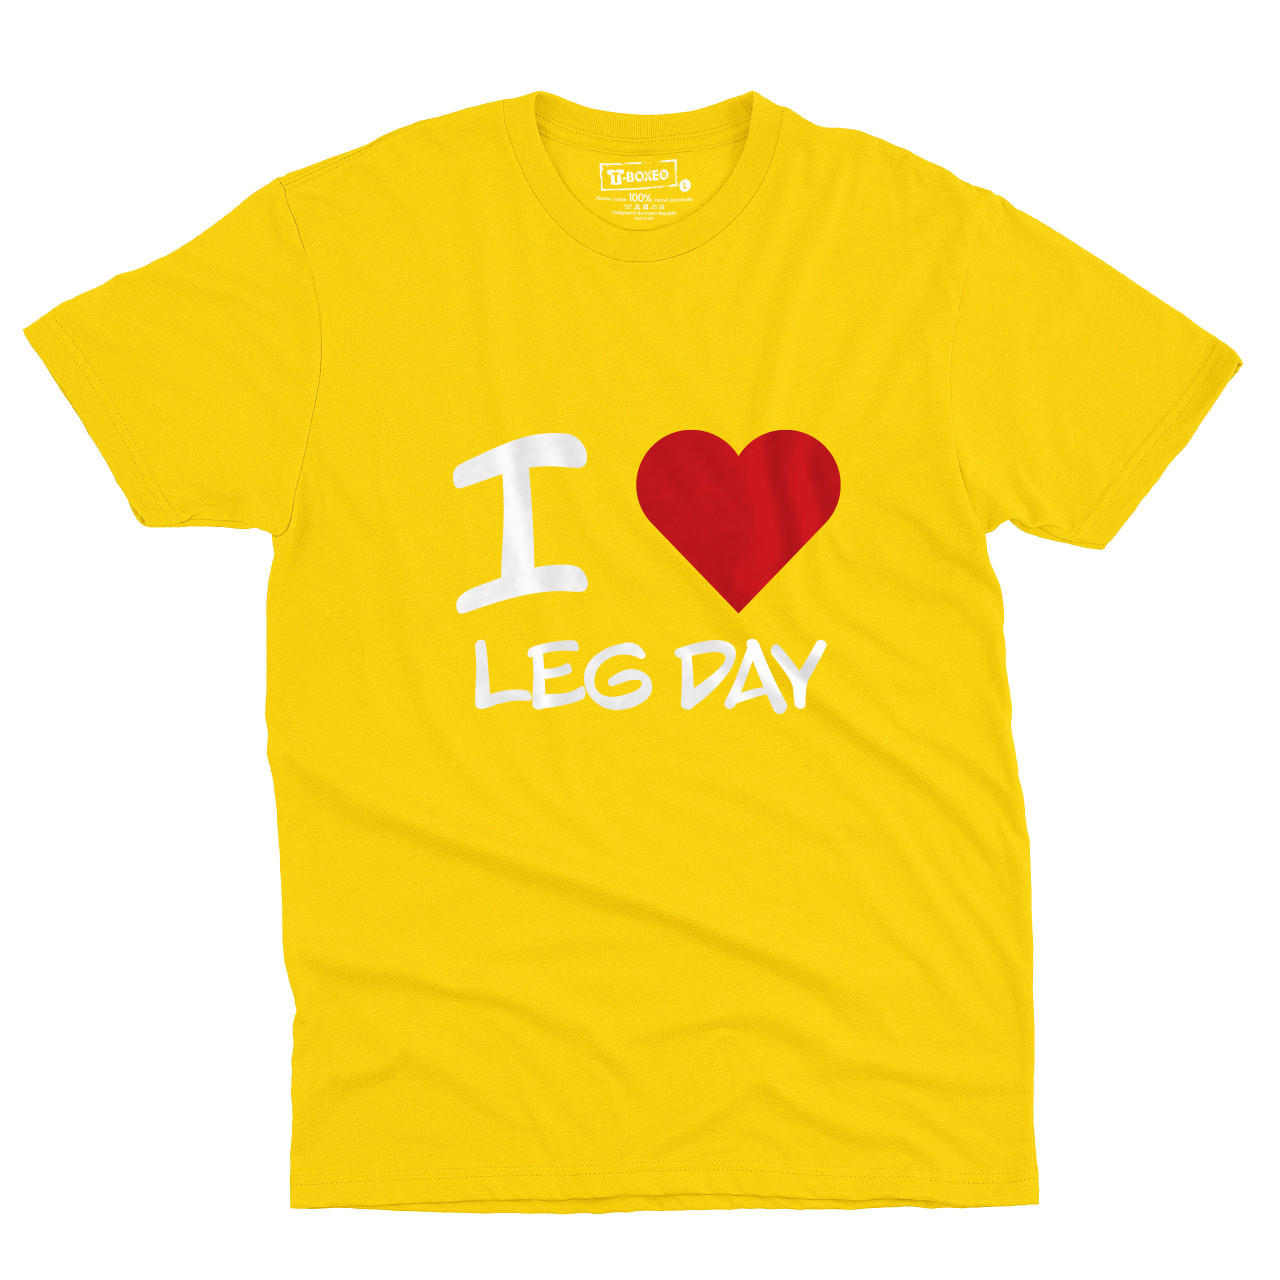 Pánské tričko s potiskem “I ♥️ Leg Day”